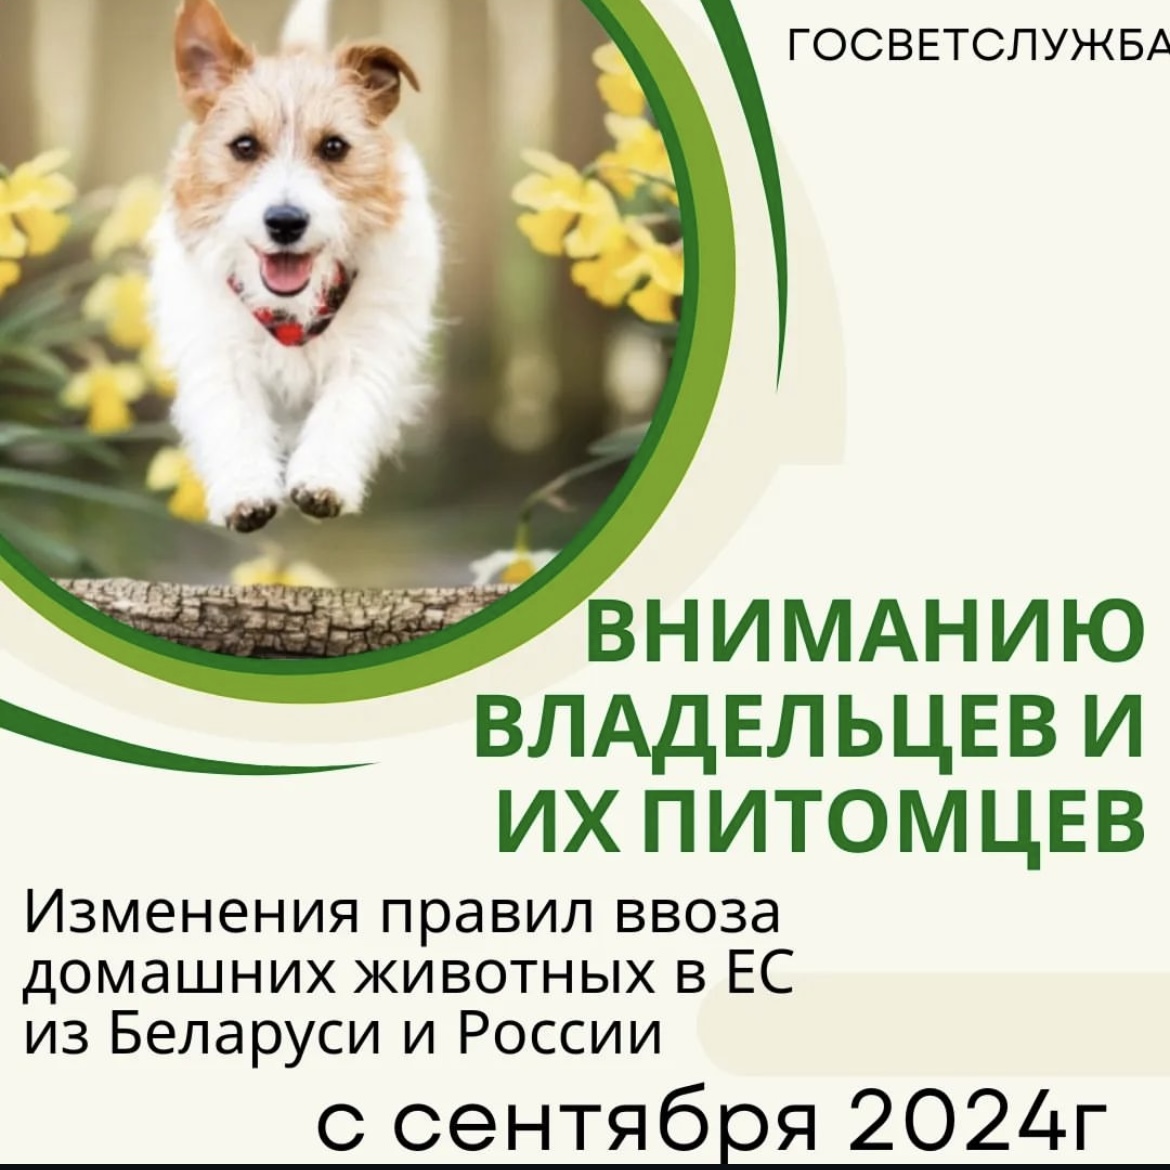 Изменение правил ввоза домашних животных в ЕС из Беларуси и России